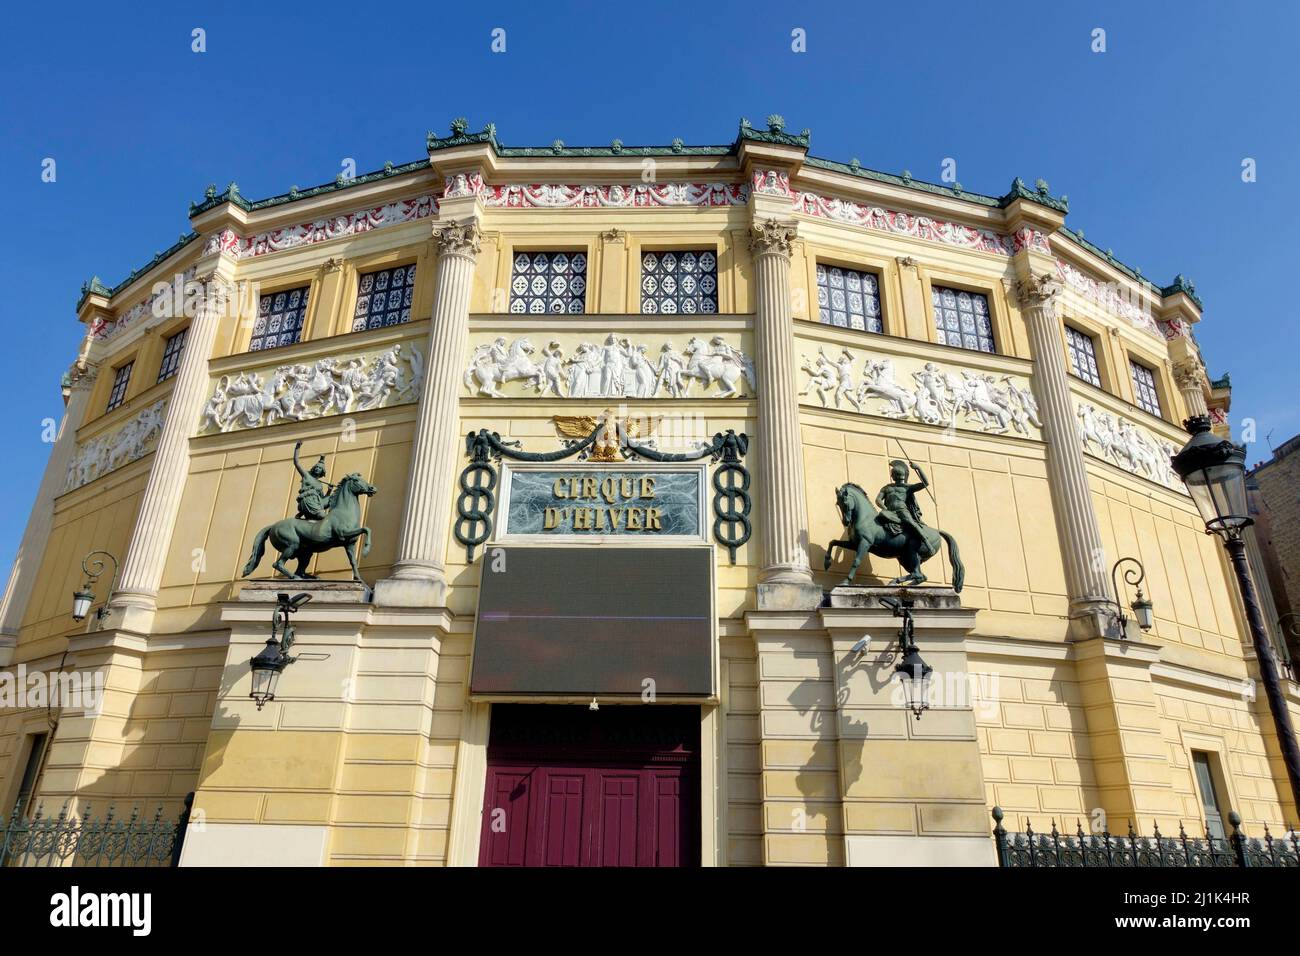 Vue sur le Cirque d'hiver de Paris, France. Le théâtre a été conçu par l'architecte Jacques Ignace Hittorff et a été ouvert par l'empereur Napoléon Ier Banque D'Images